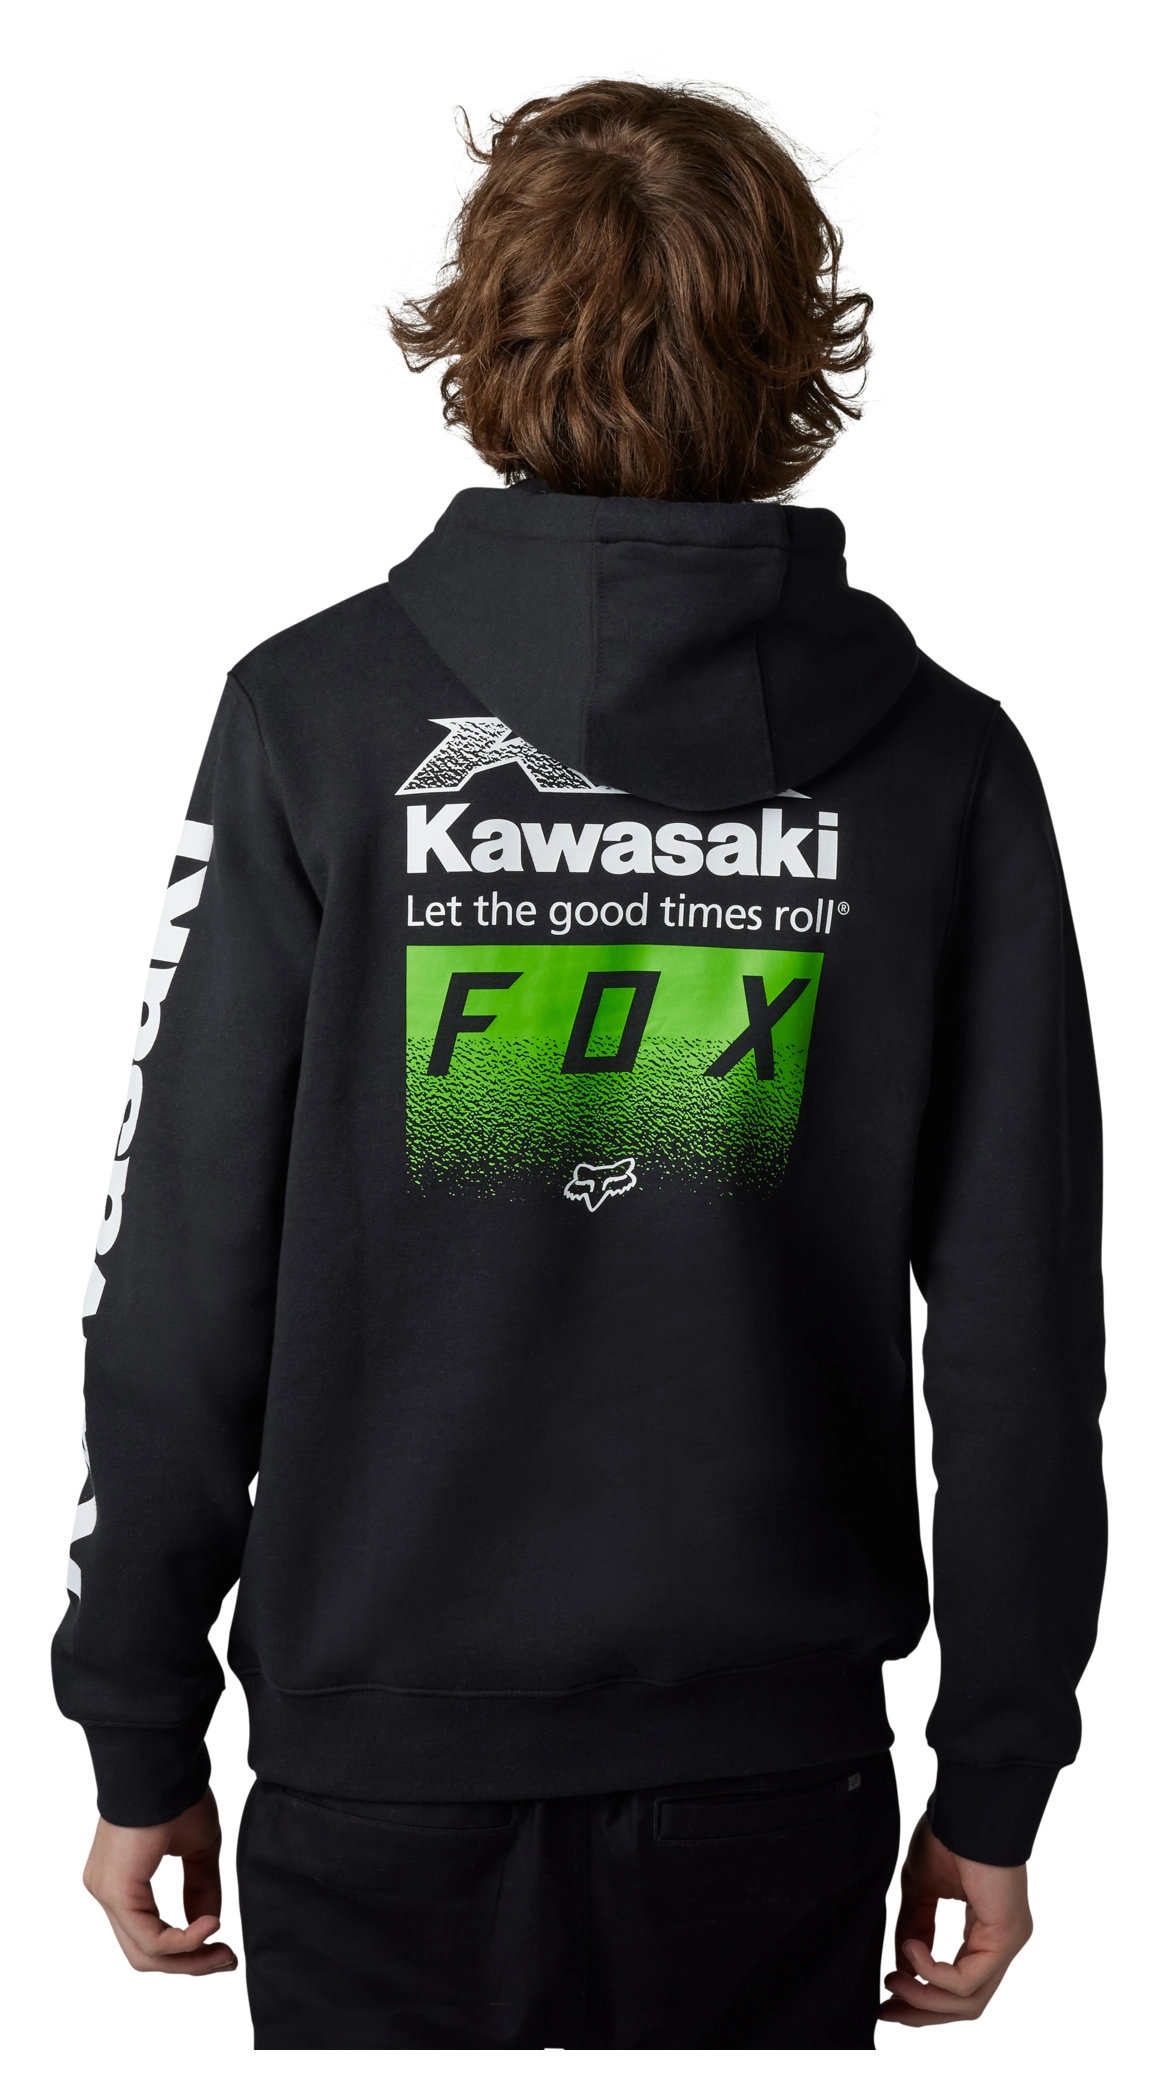 FOX KAWASAKI X KAWI